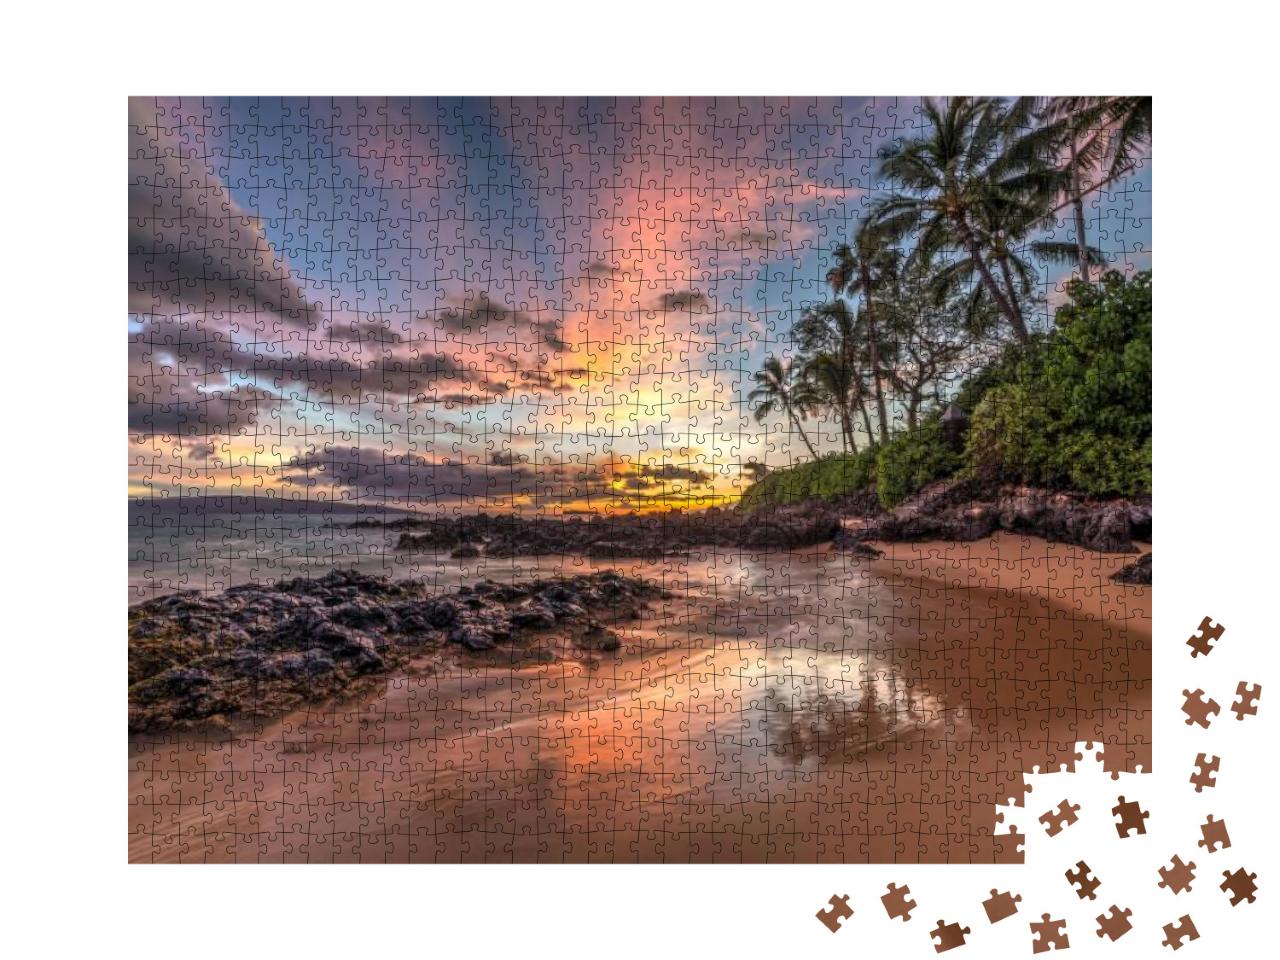 Puzzle 1000 Teile „Verzauberter hawaiianischer Sonnenuntergang“